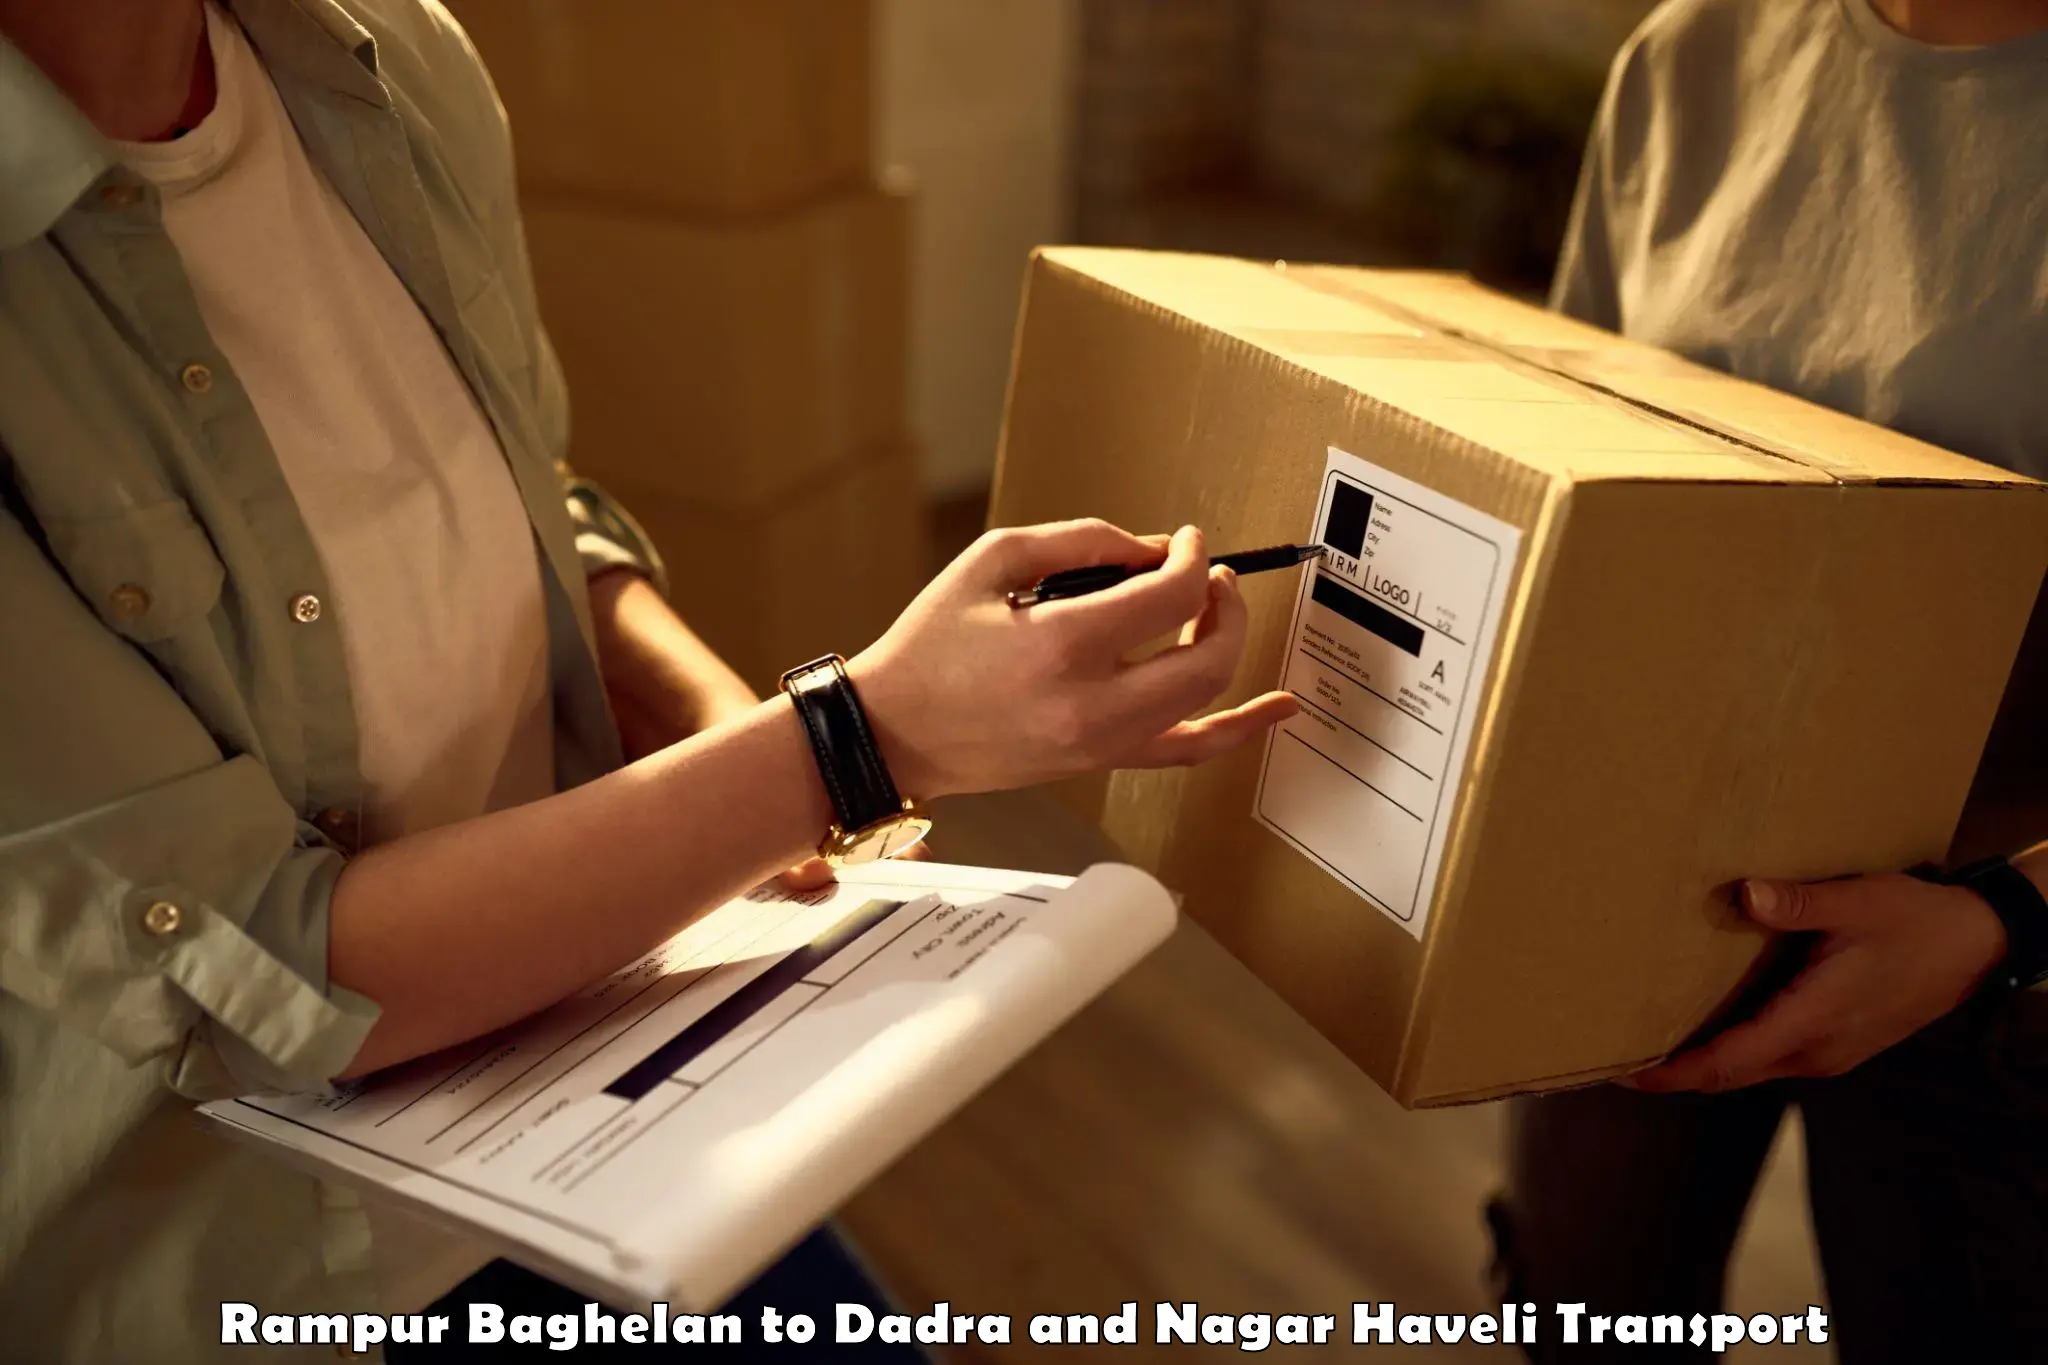 International cargo transportation services Rampur Baghelan to Dadra and Nagar Haveli